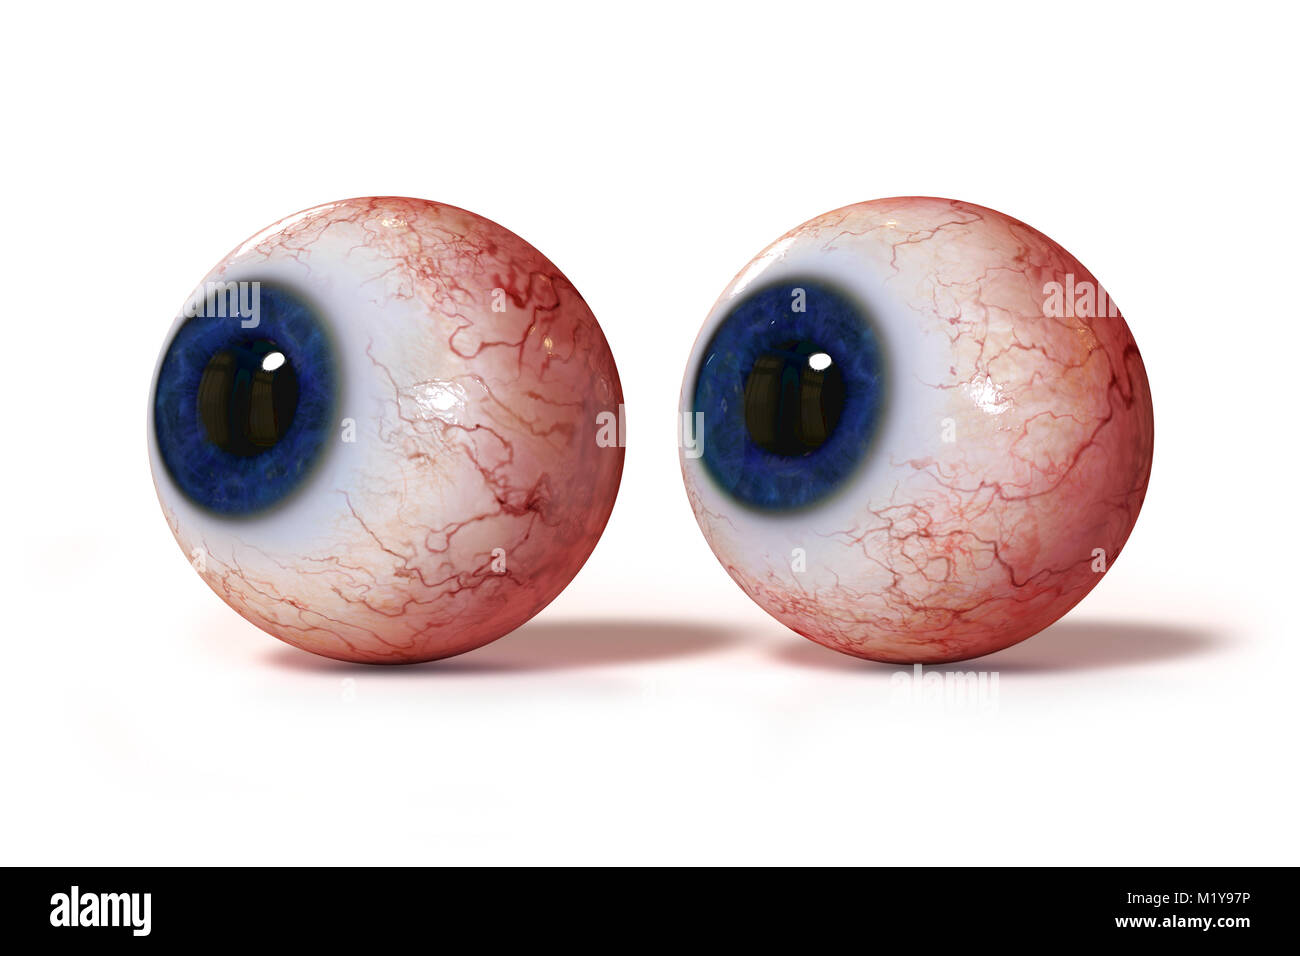 Deux yeux humains réalistes avec iris bleu, isolé sur fond blanc Banque D'Images